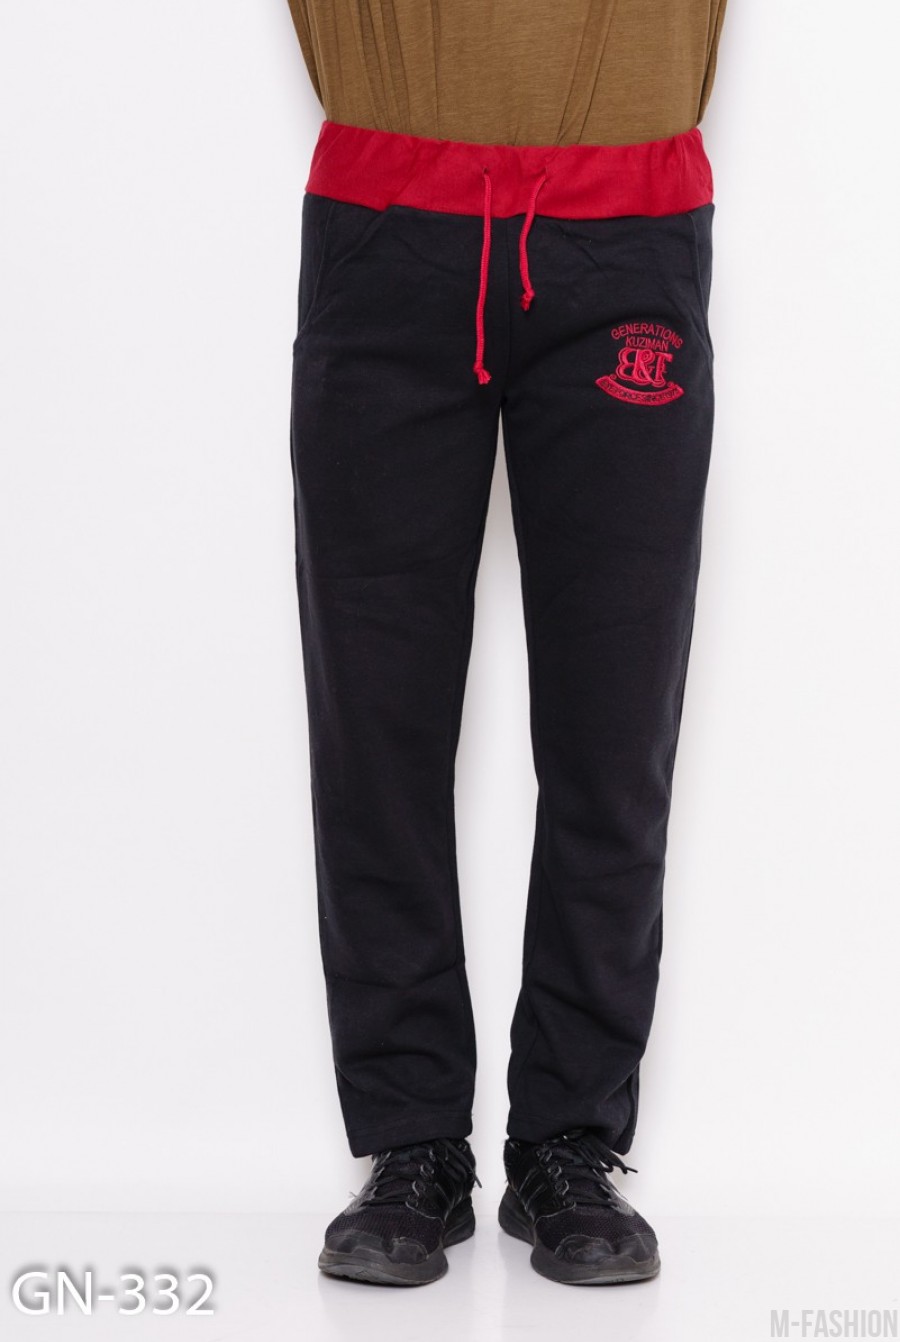 Черно-бордовые трикотажные спортивные штаны с аппликацией - Фото 1